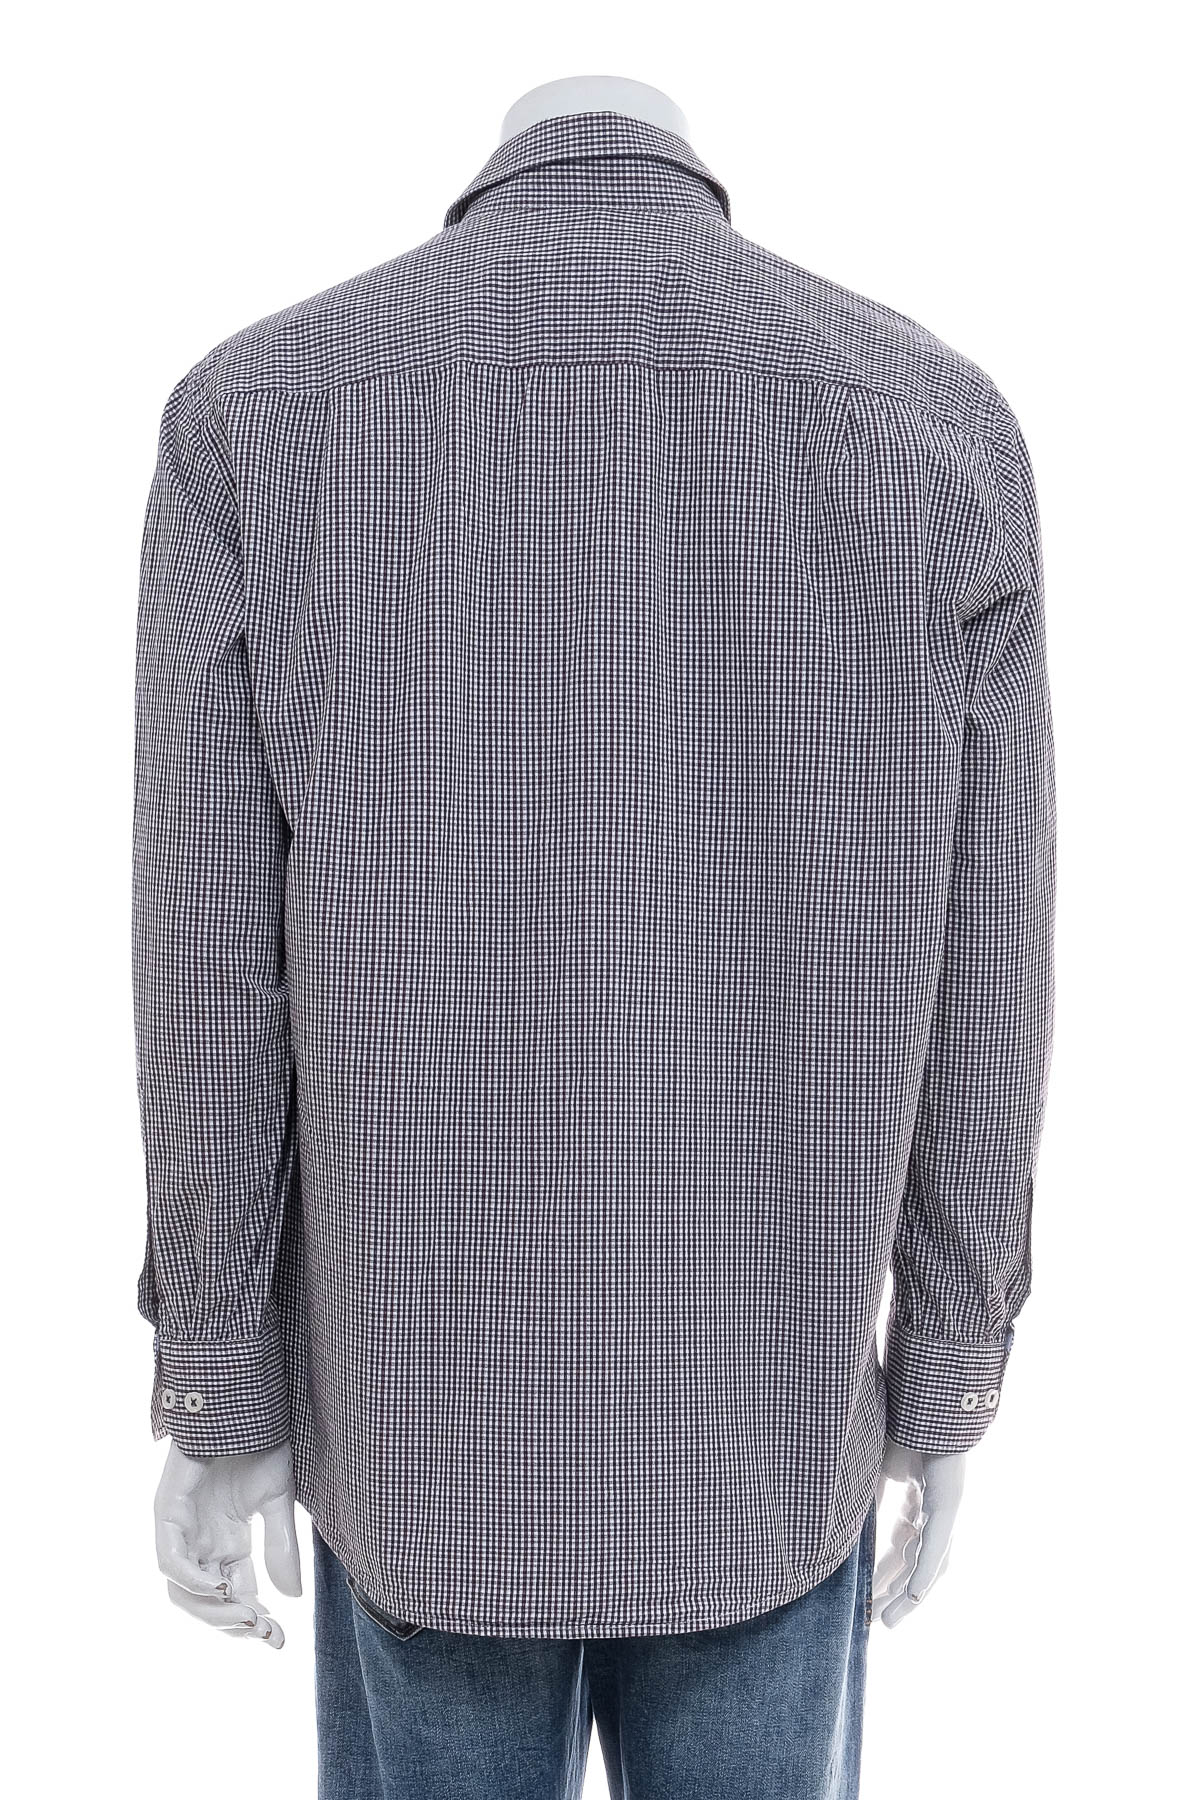 Men's shirt - Redmond - 1